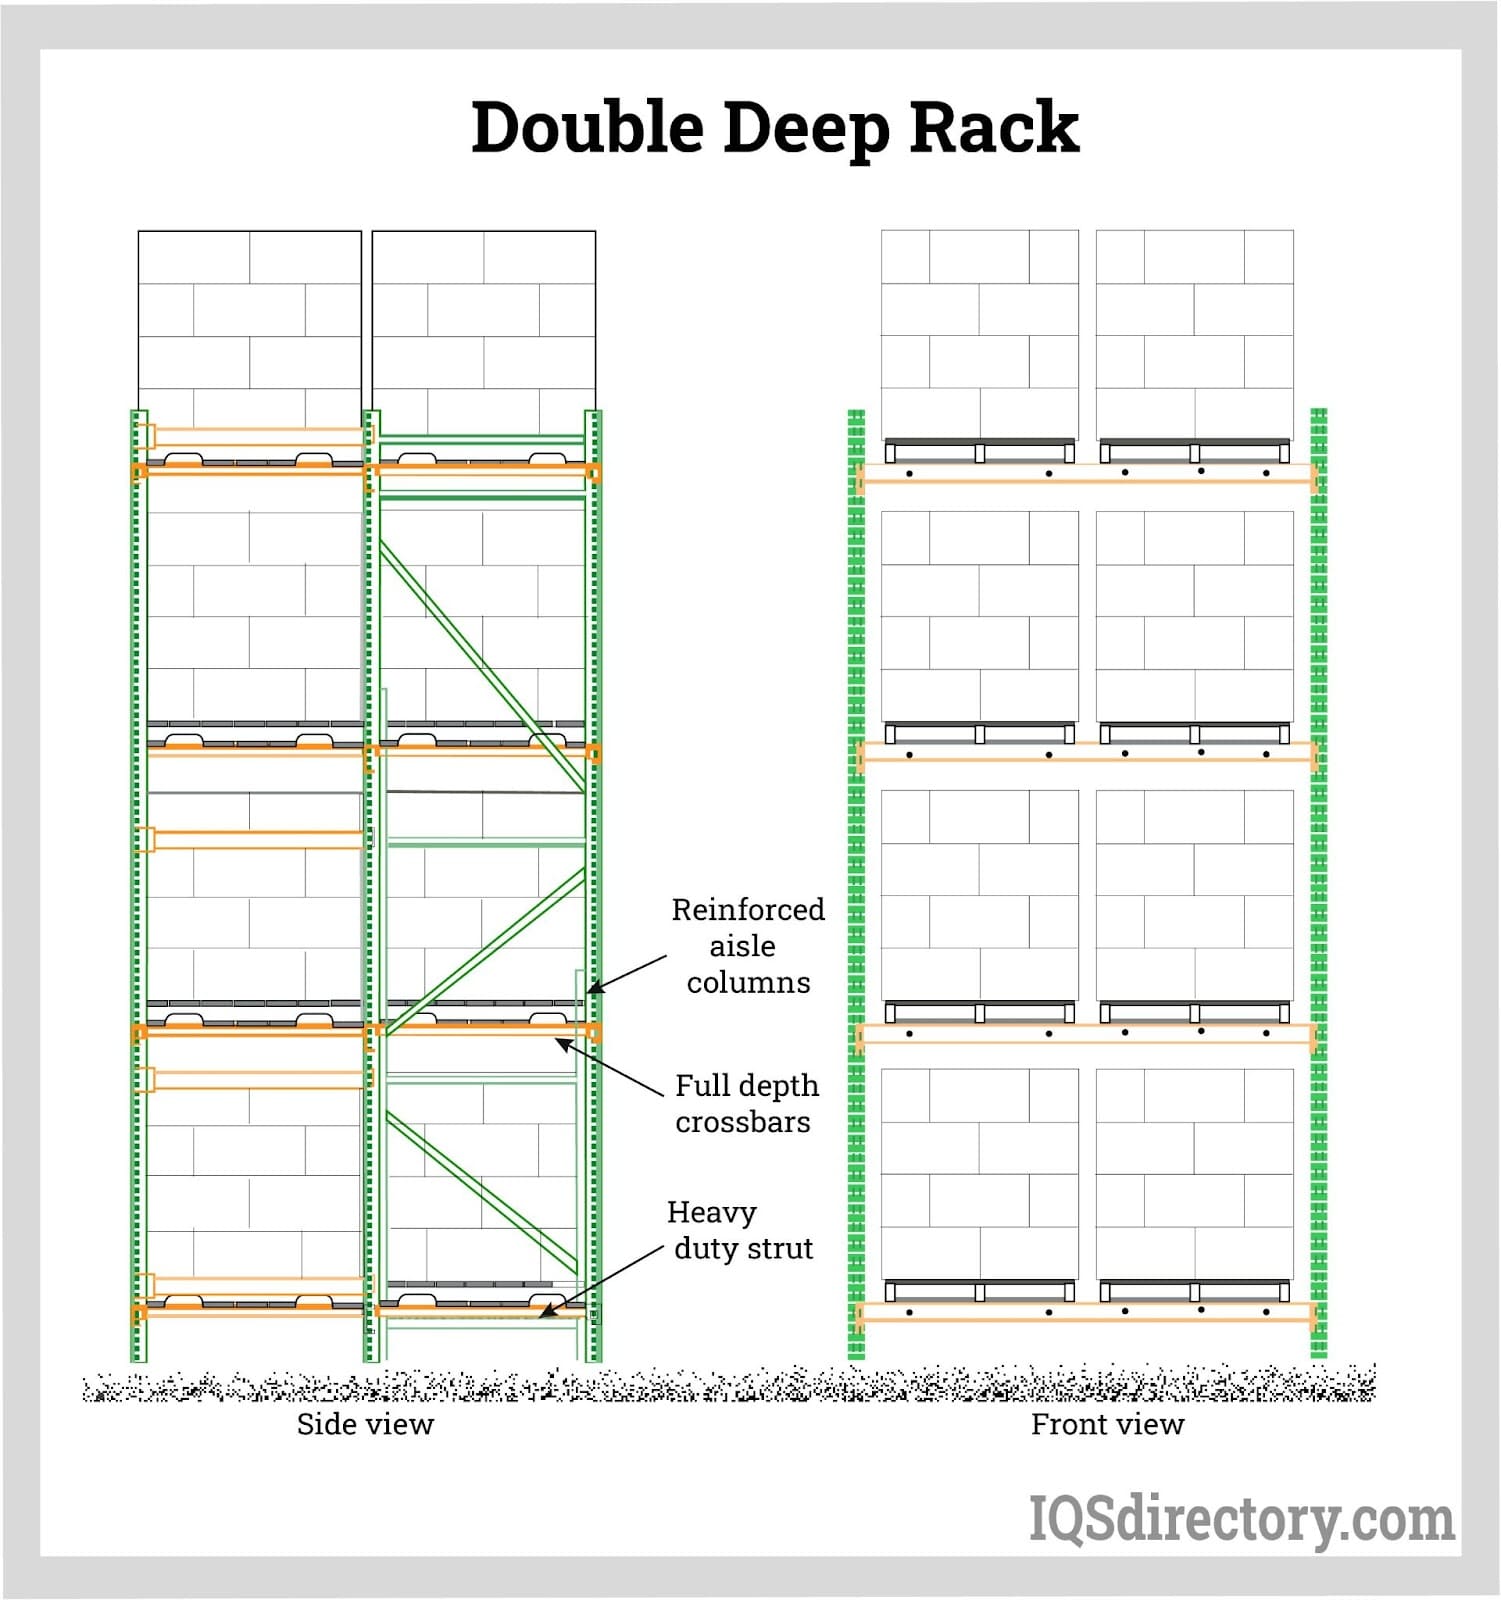 Double Deep Rack